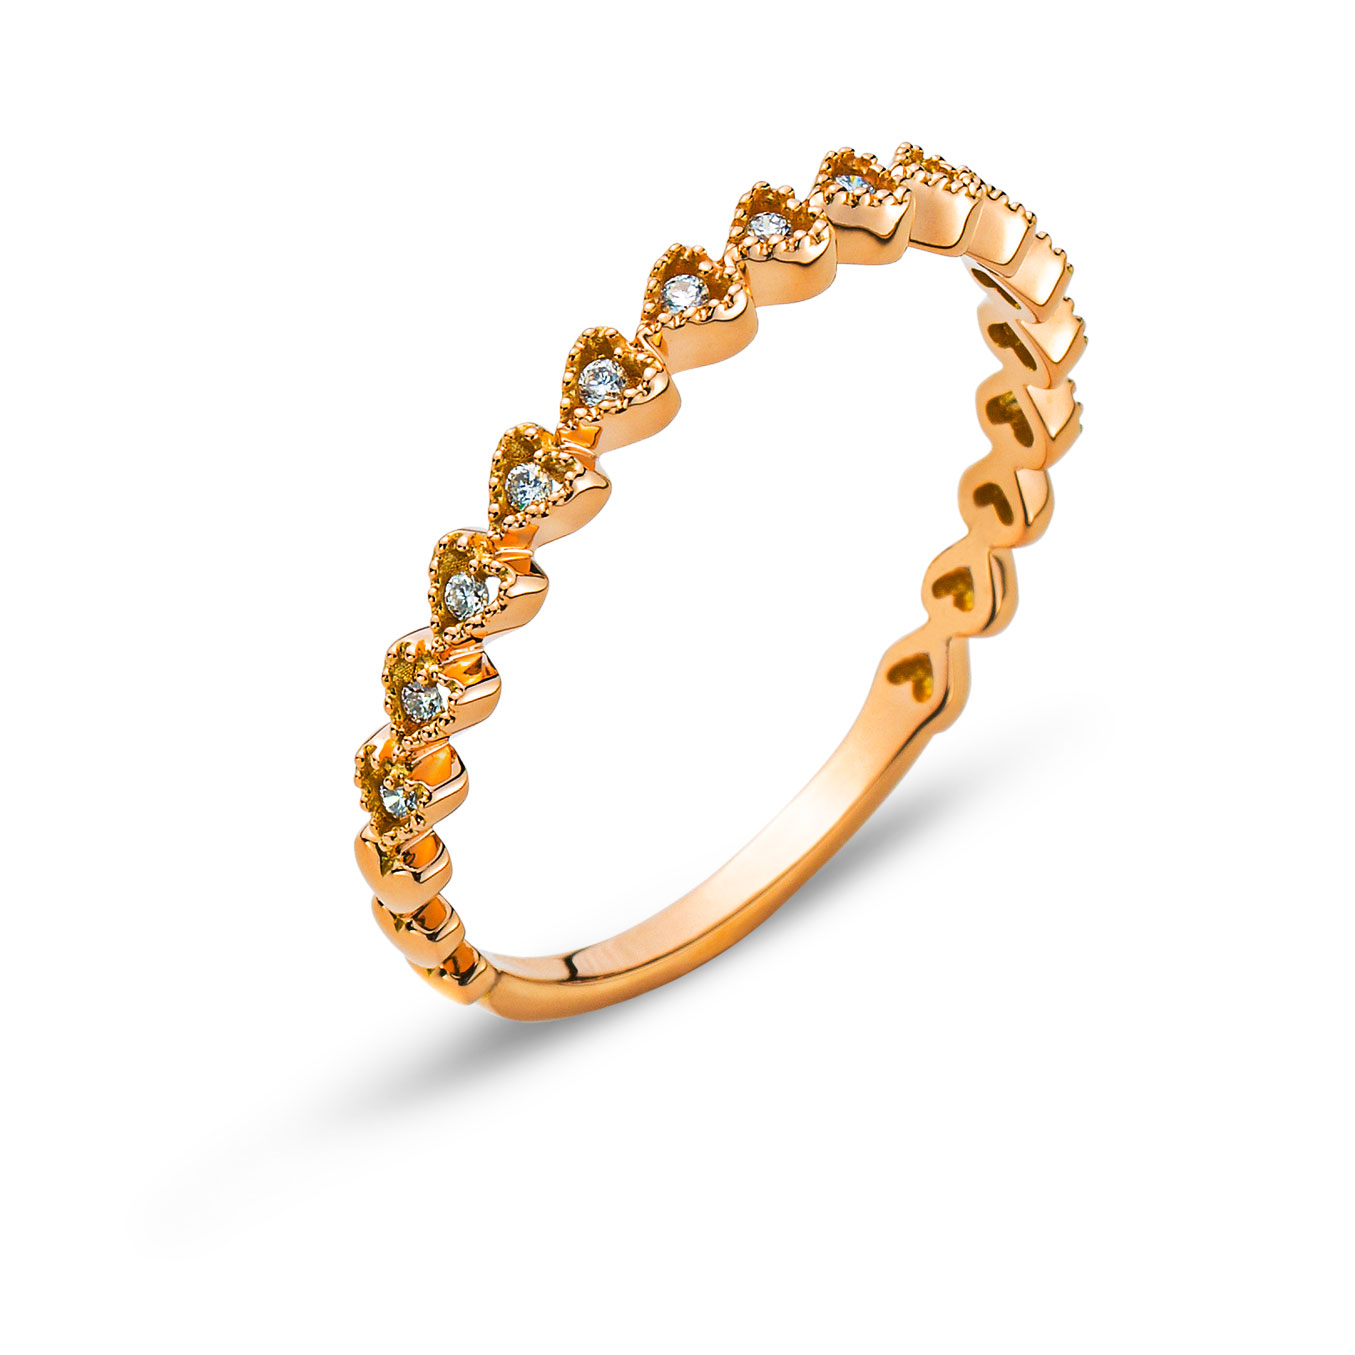 AURONOS Prestige Ring Mémoire Heart Rose Gold 18K Diamonds 0.06ct